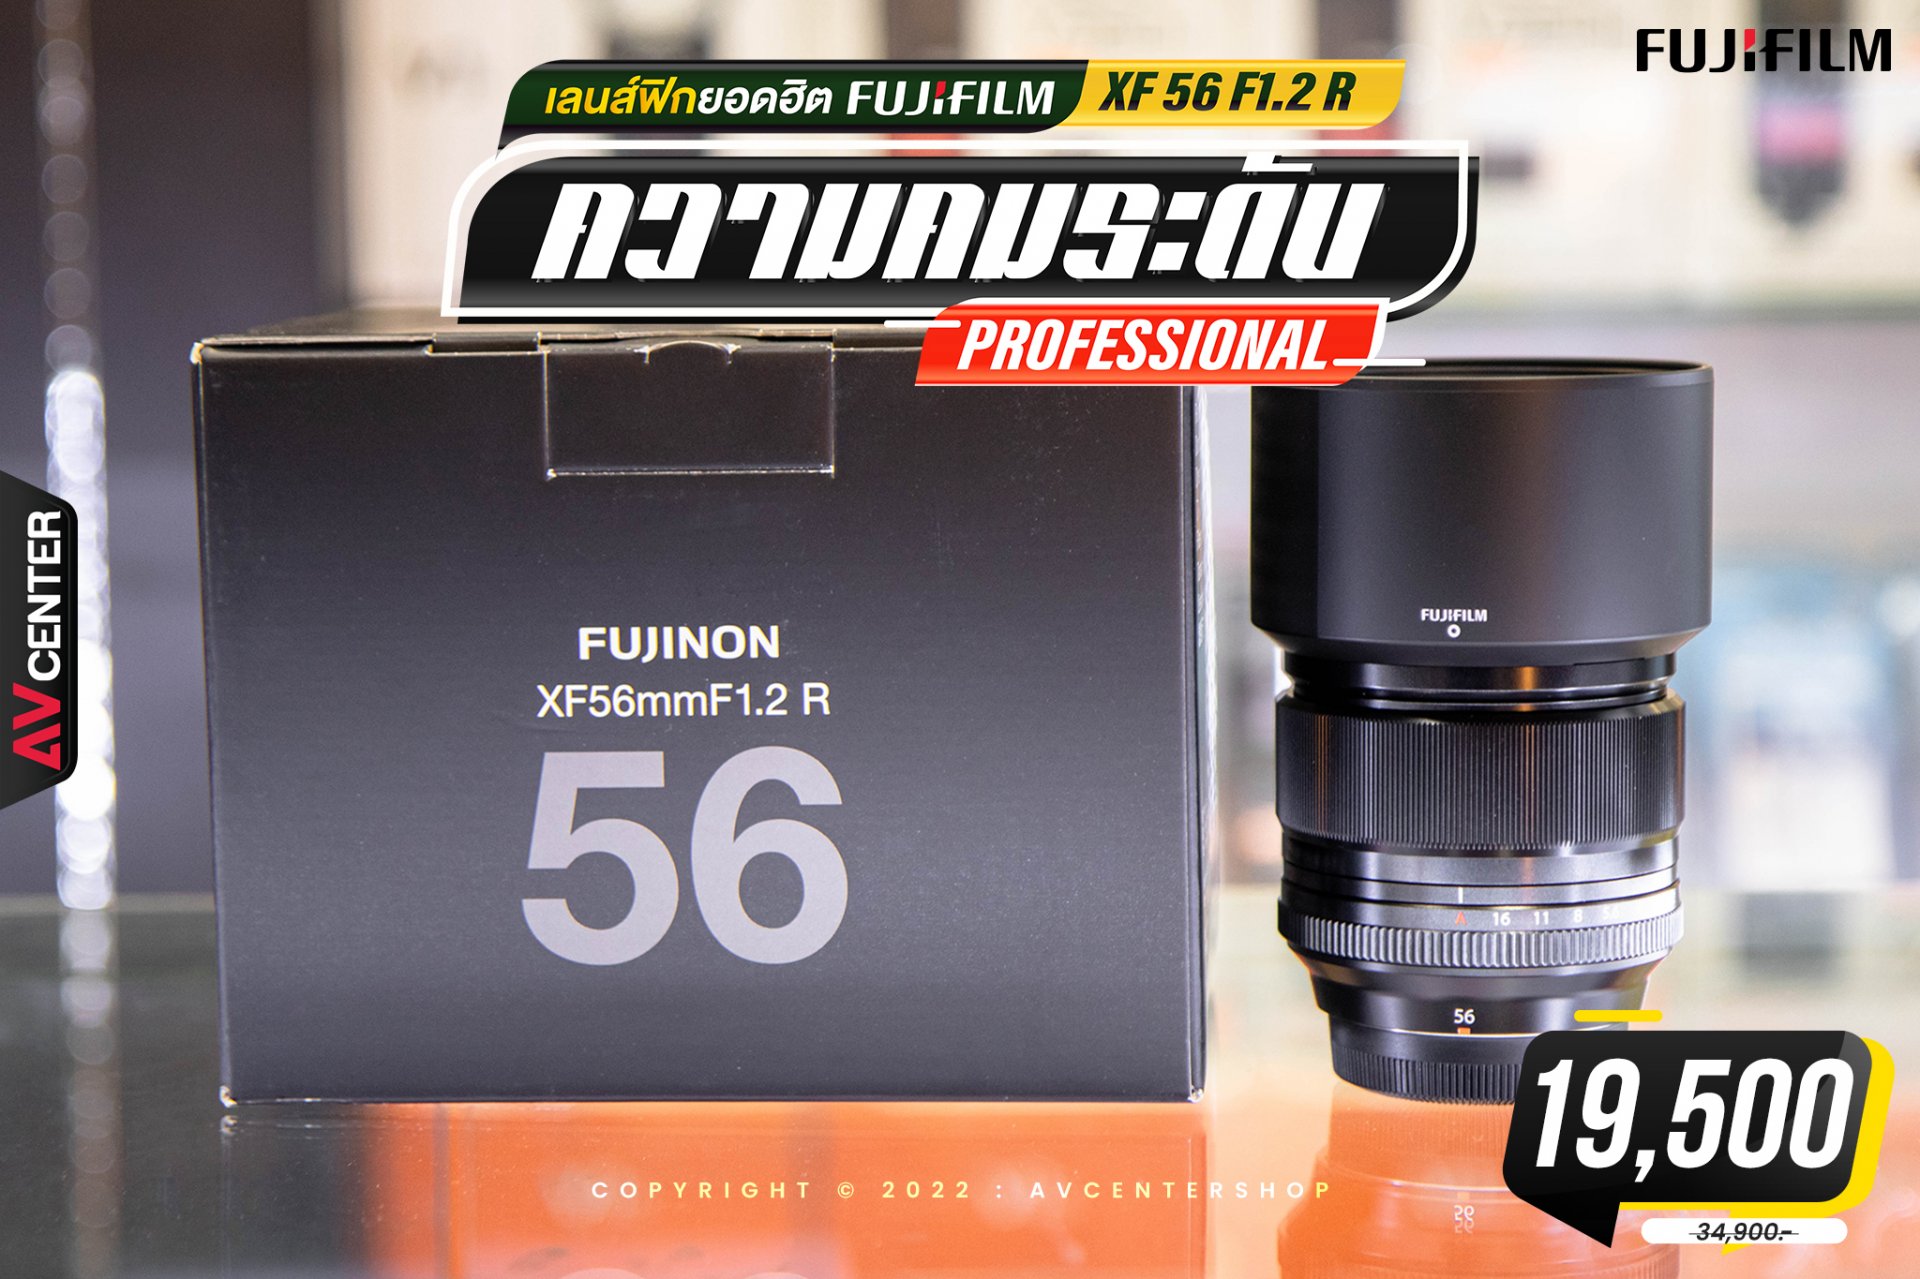  Fujigilm XF 56 F1.2R